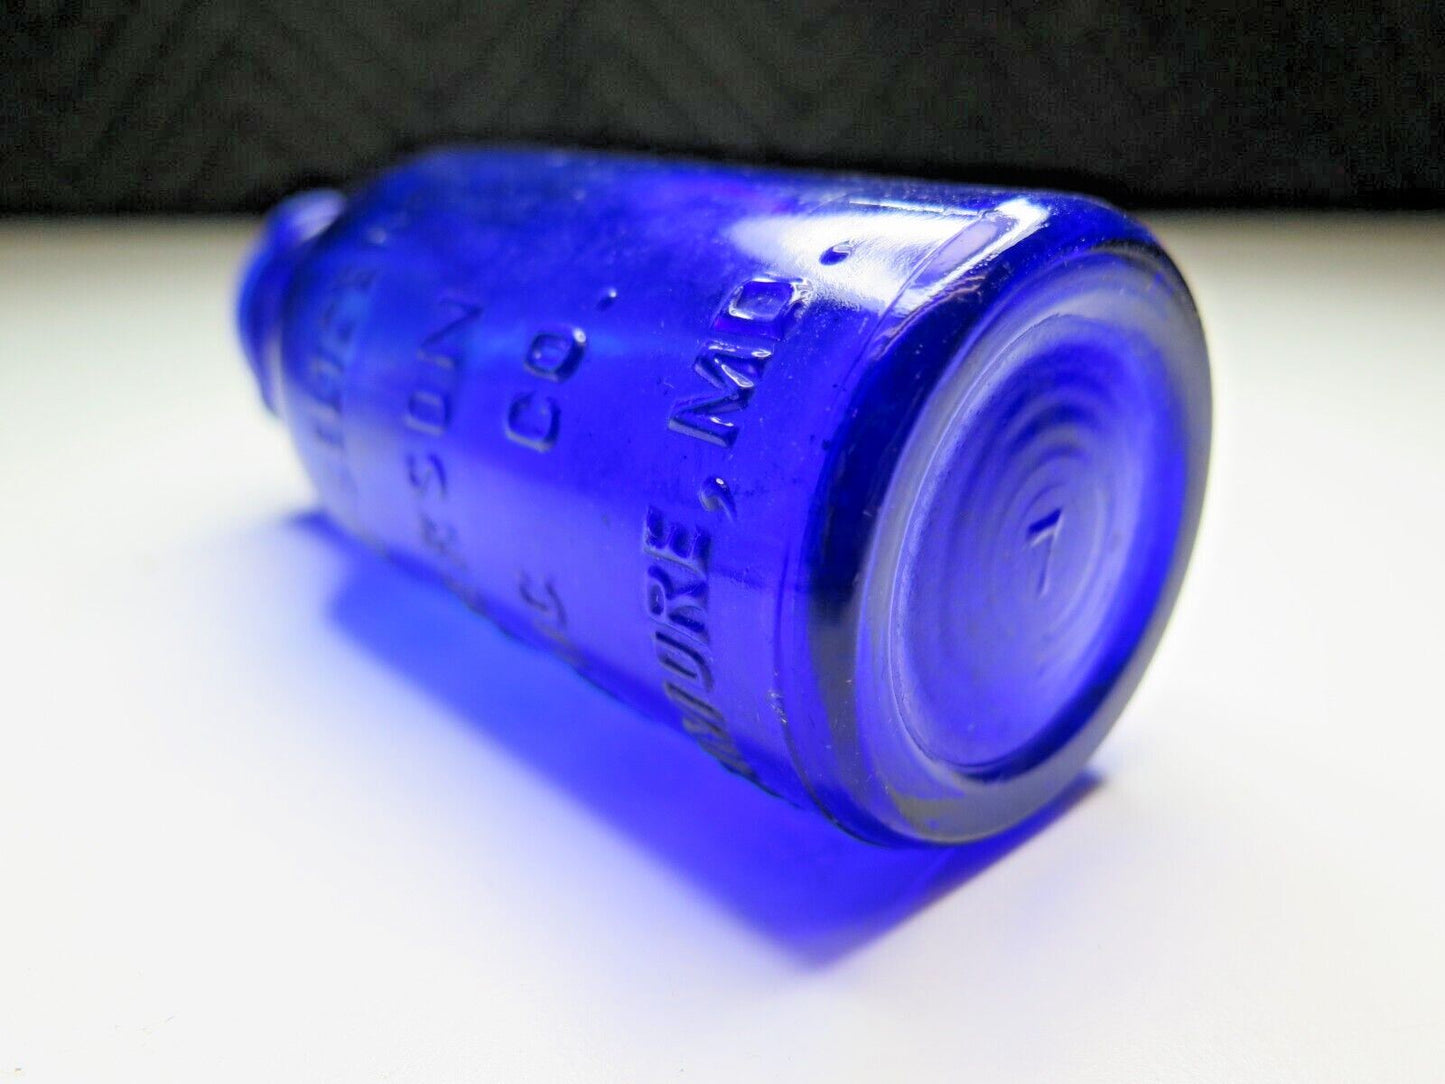 Cobalt BROMO SELTZER Emerson Bottle, Medium 5 inch, Blue Vintage Glass Medicinal